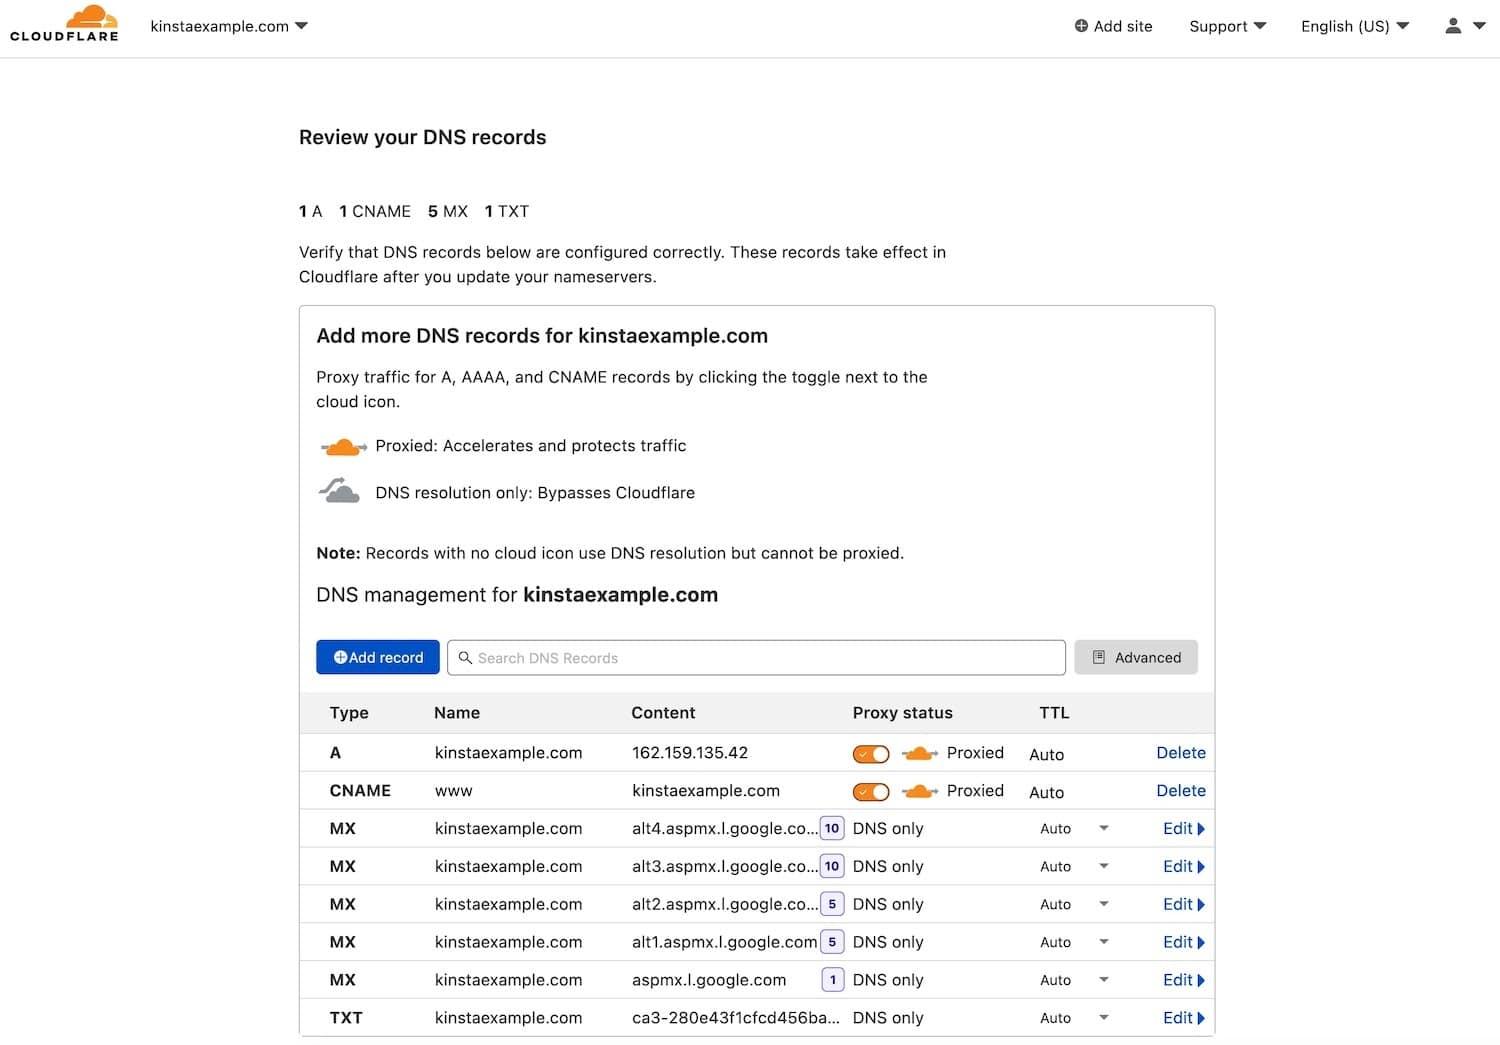 Het controleren van DNS records voor een nieuw toegevoegd domein in Cloudflare.